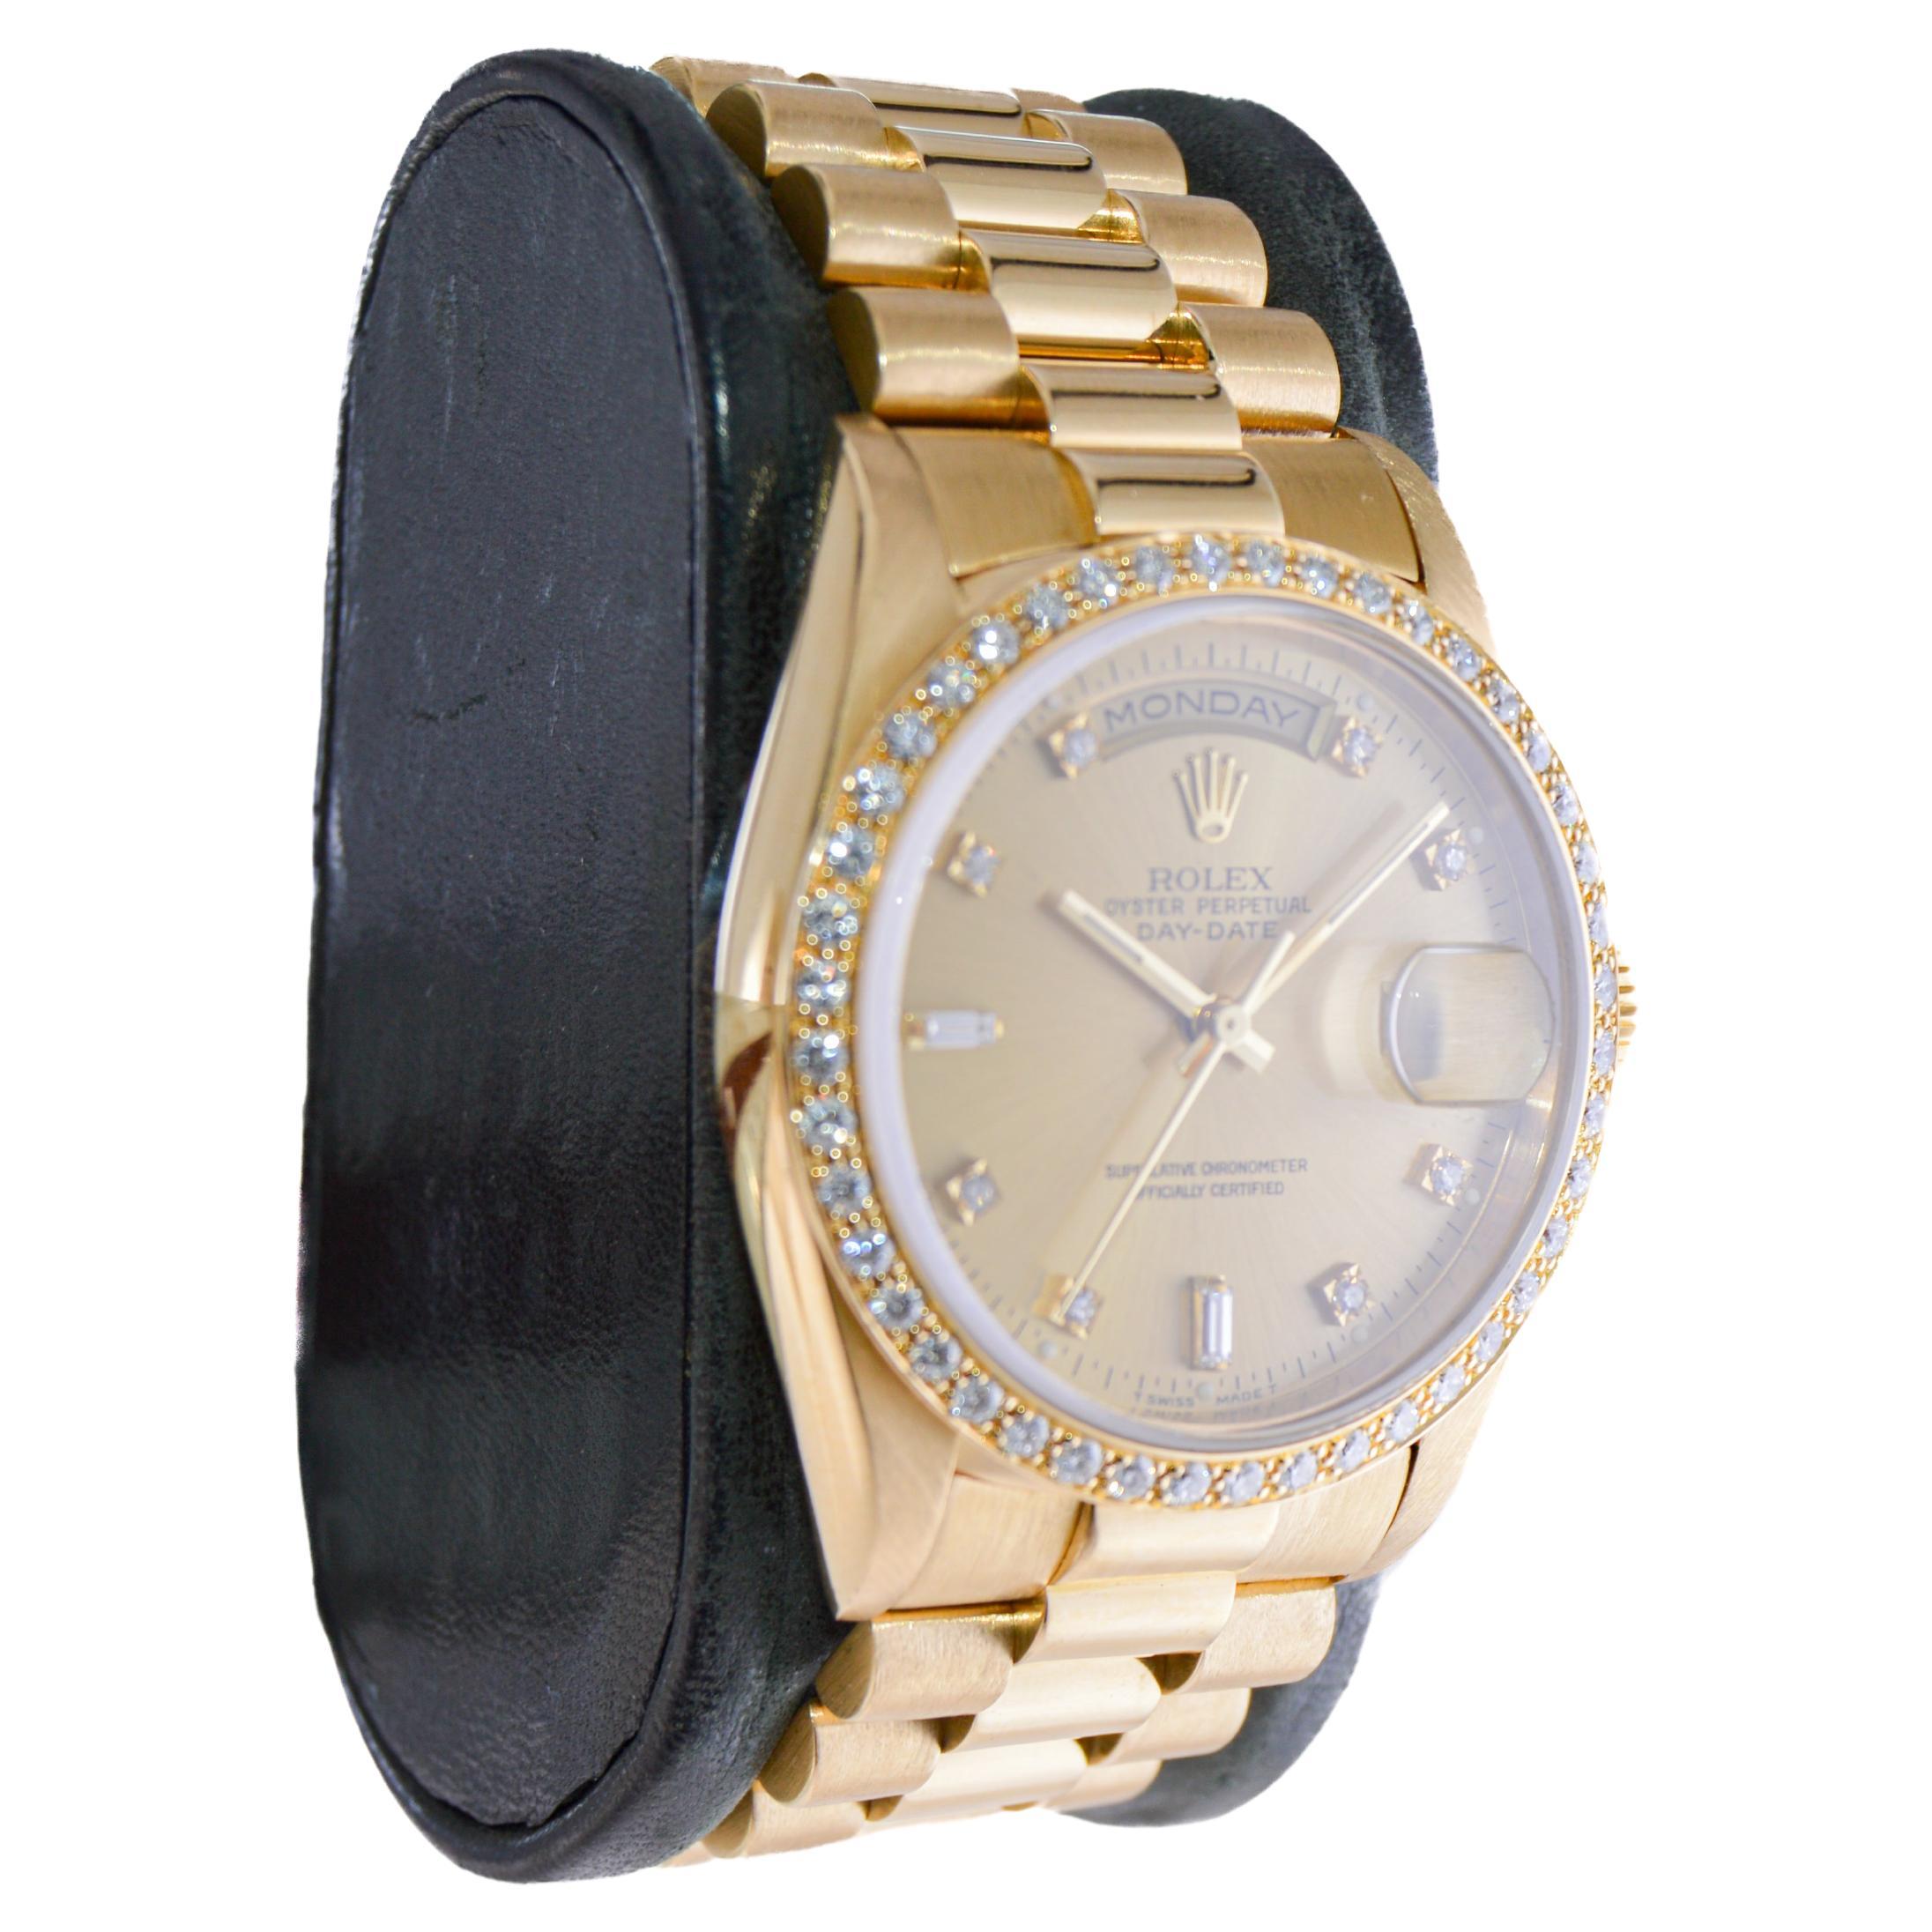 FABRIK / HAUS: Rolex Watch Company
STIL / REFERENZ: Präsident / Referenz 18000
METALL / MATERIAL: 18Kt. Massiv Gold
CIRCA / JAHR: 1980er Jahre
ABMESSUNGEN / GRÖSSE: 43 mm Länge und 36 mm Durchmesser
UHRWERK / KALIBER: Ewiger Aufzug / 31 Jewells /